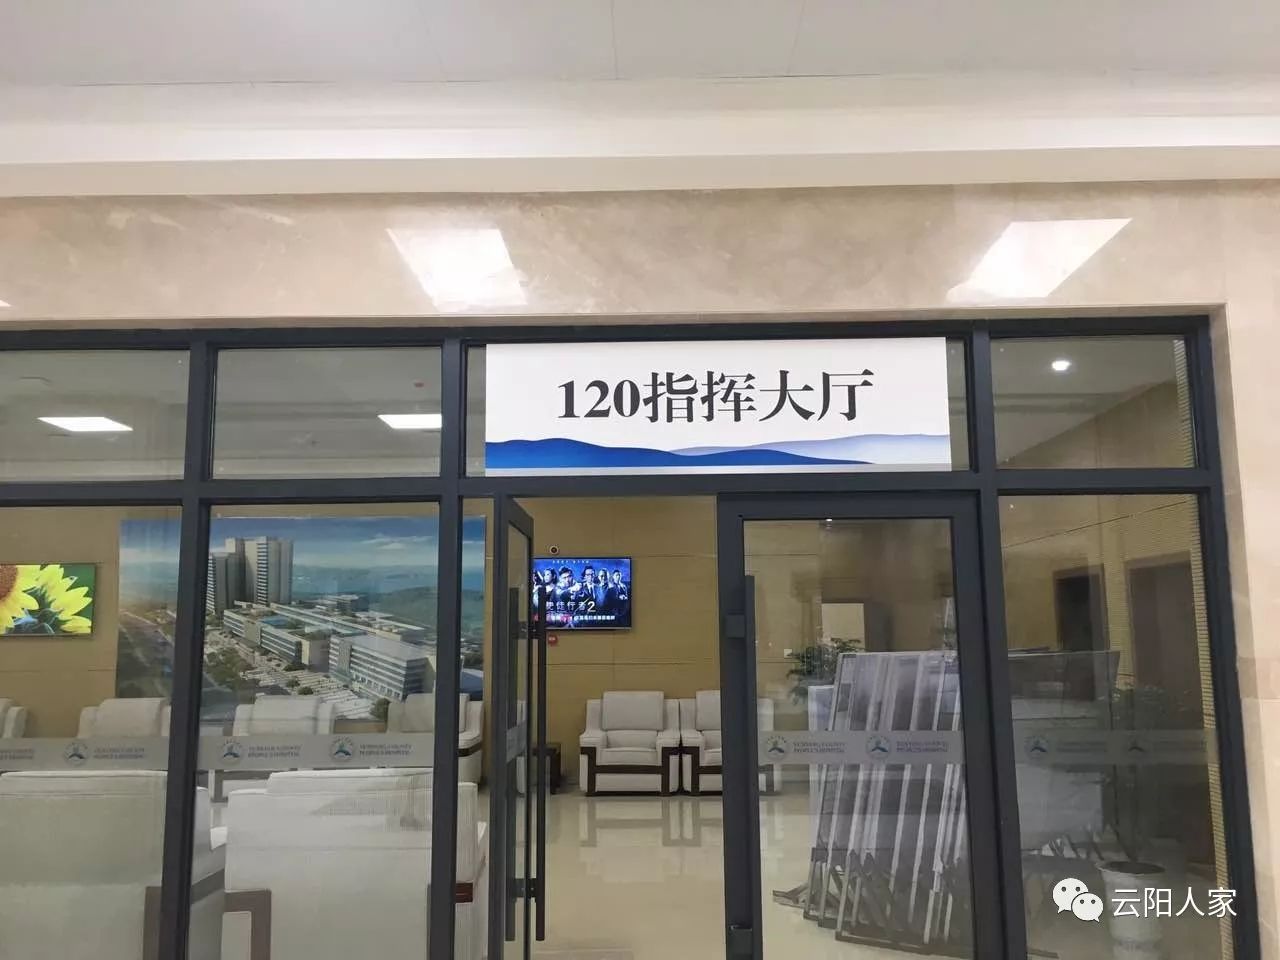 今天云阳县人民医院新院开业啦环境高大上面积166余